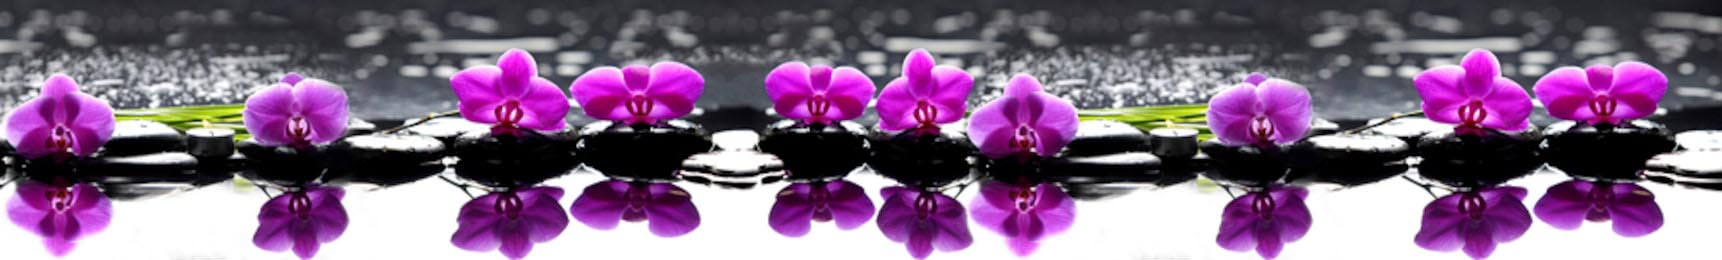 Панорамная иллюстрация фиолетовых орхидей в воде